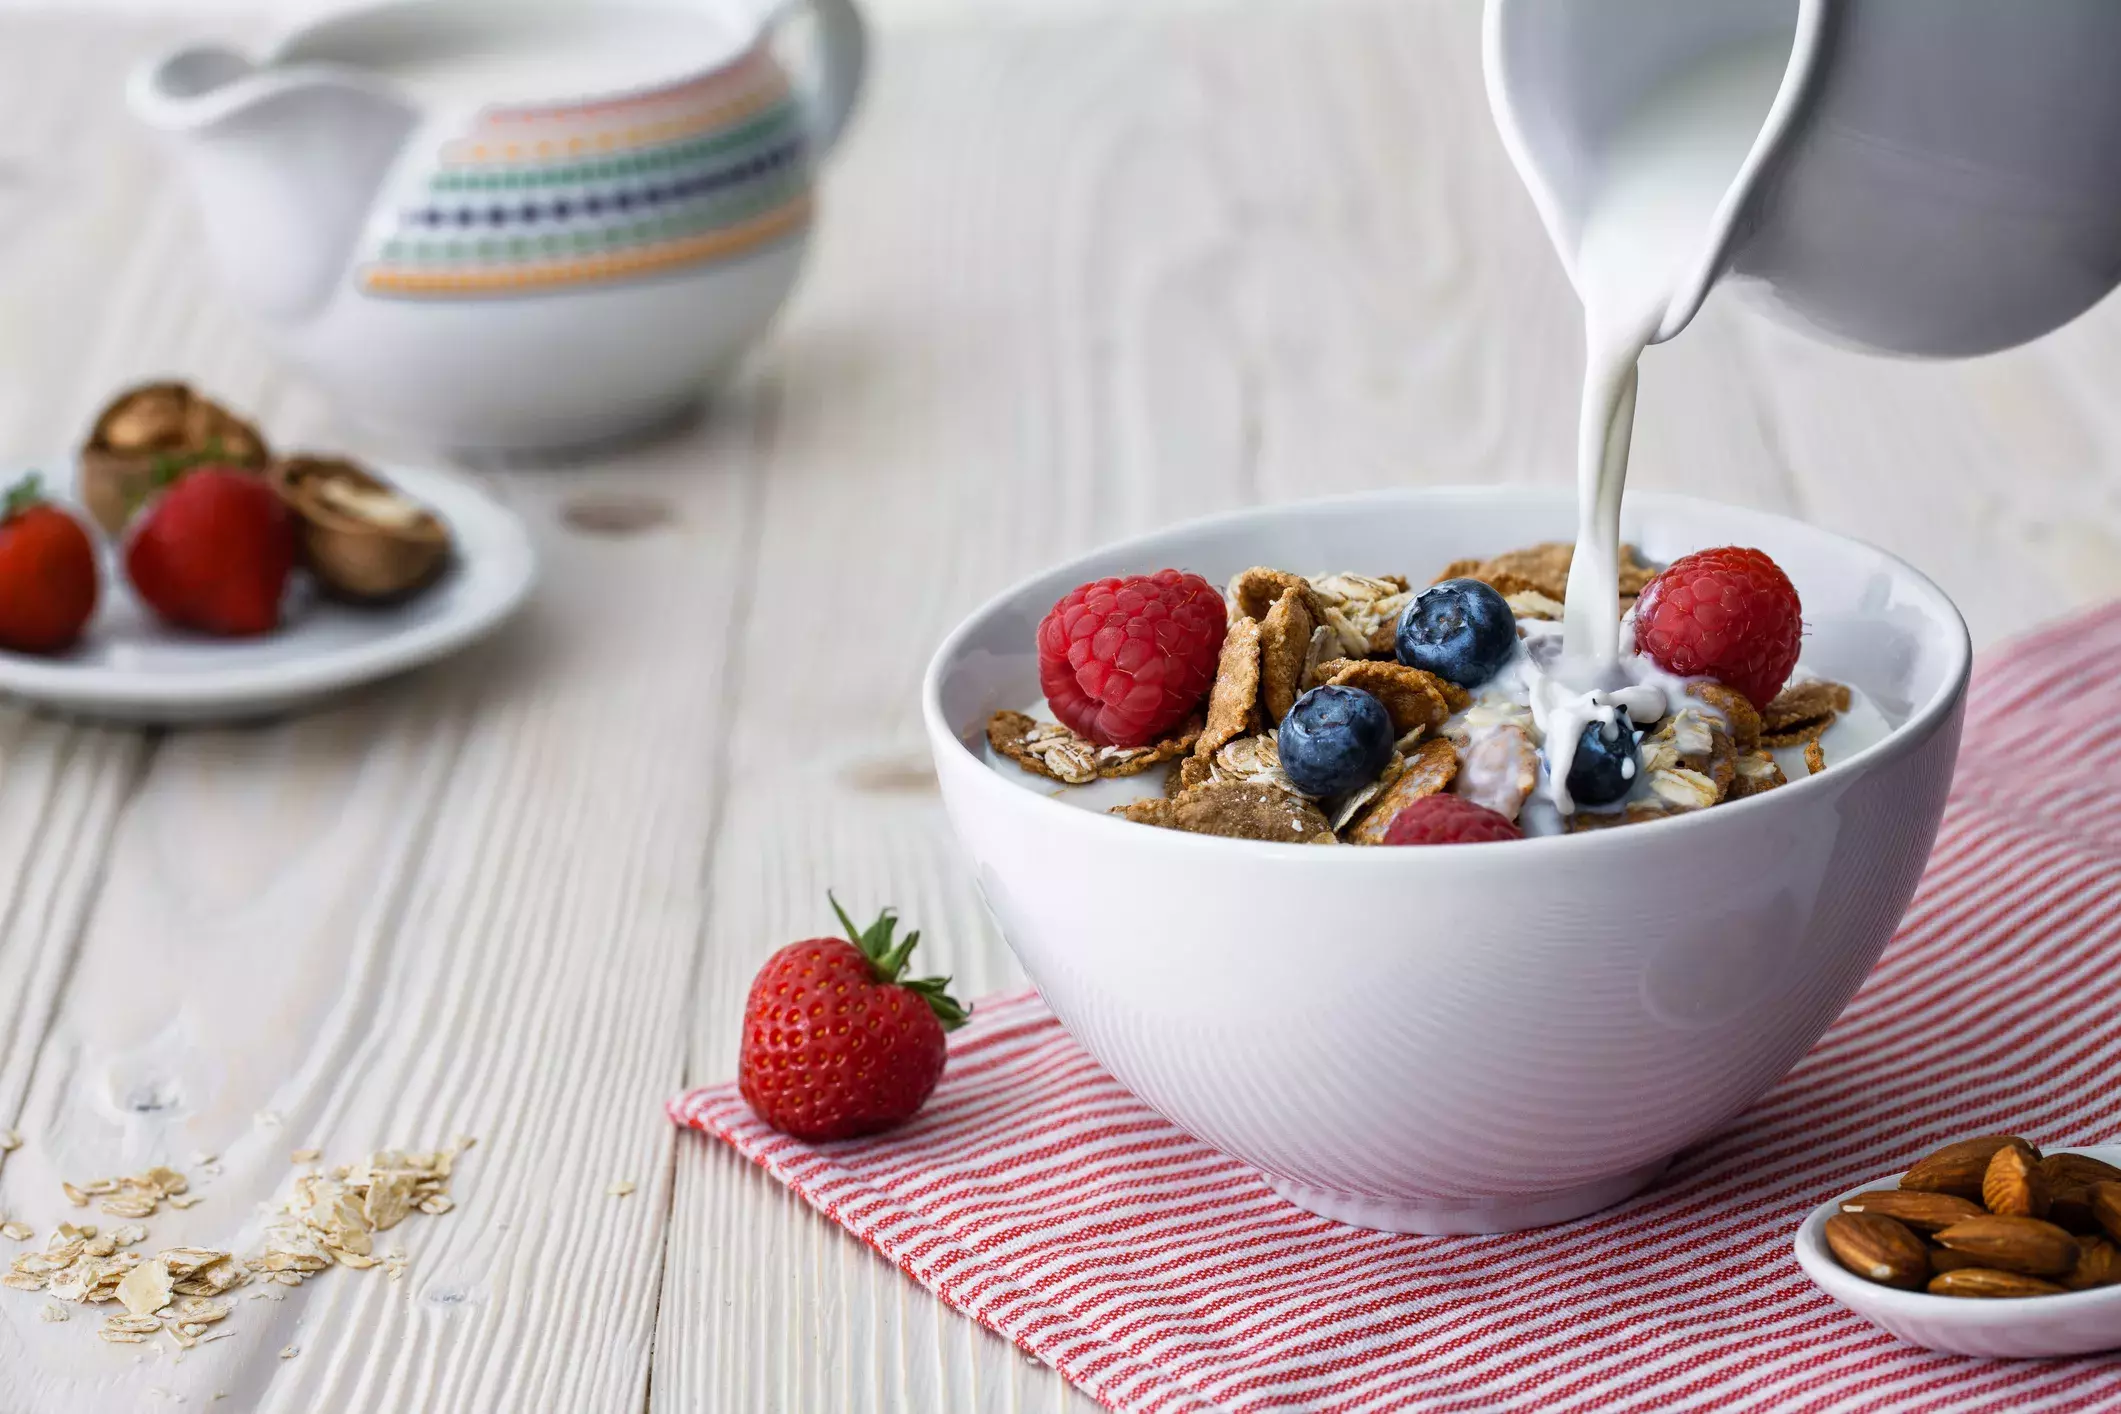 朝食に冷たいシリアル食べてない 代謝アップに効果的な食べ方のコツ